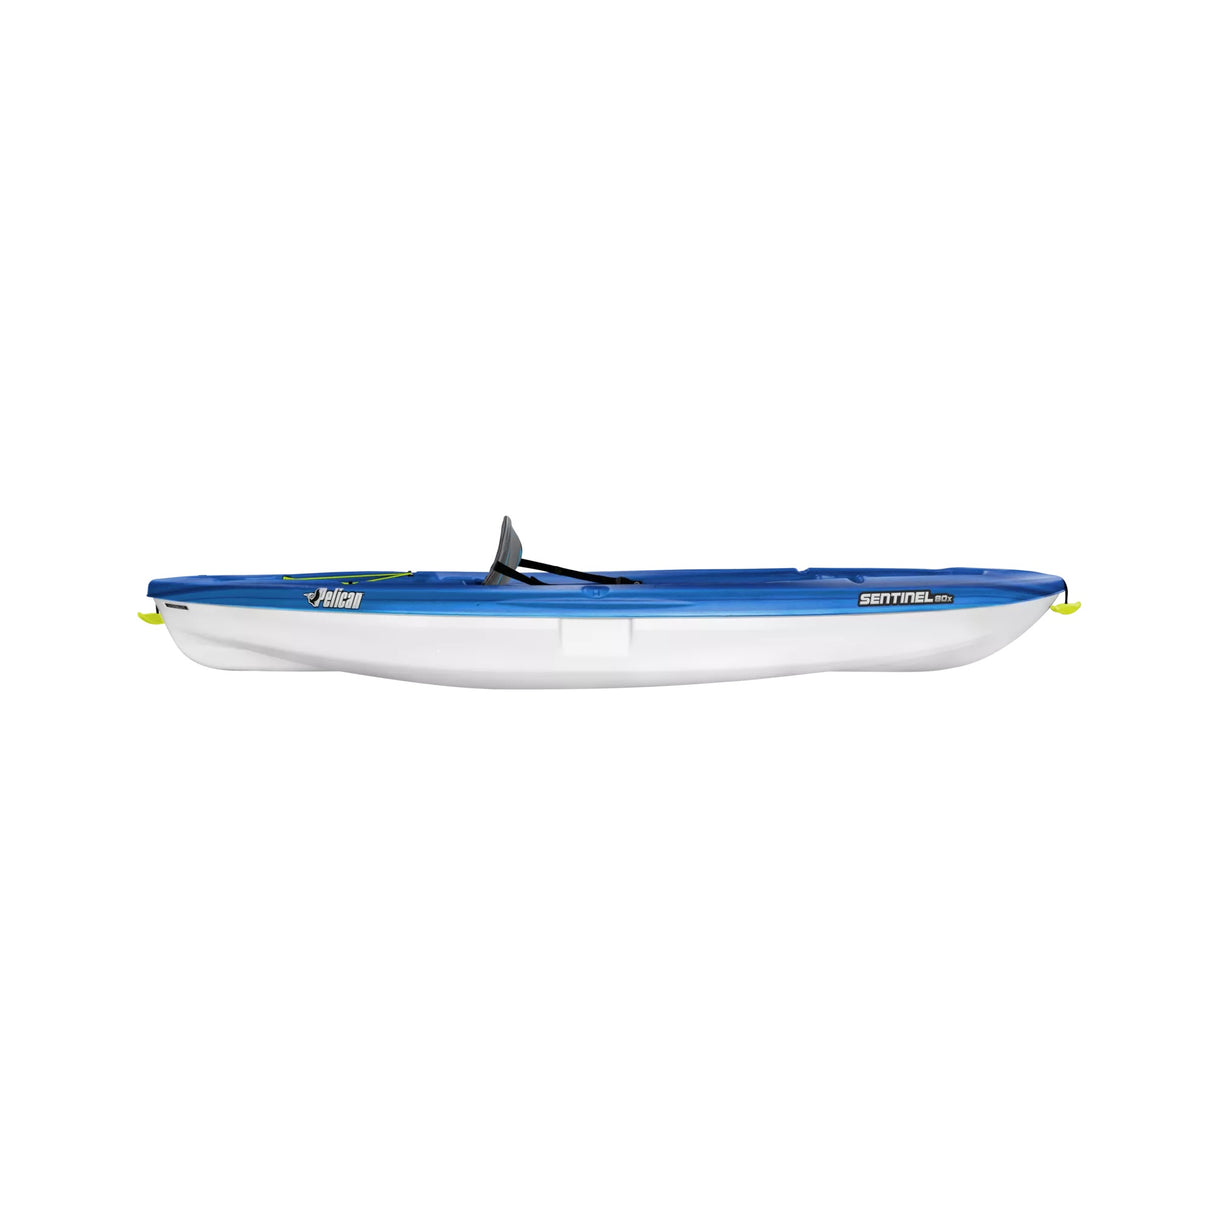 Pelican Sentinel 80X sit on top kayak